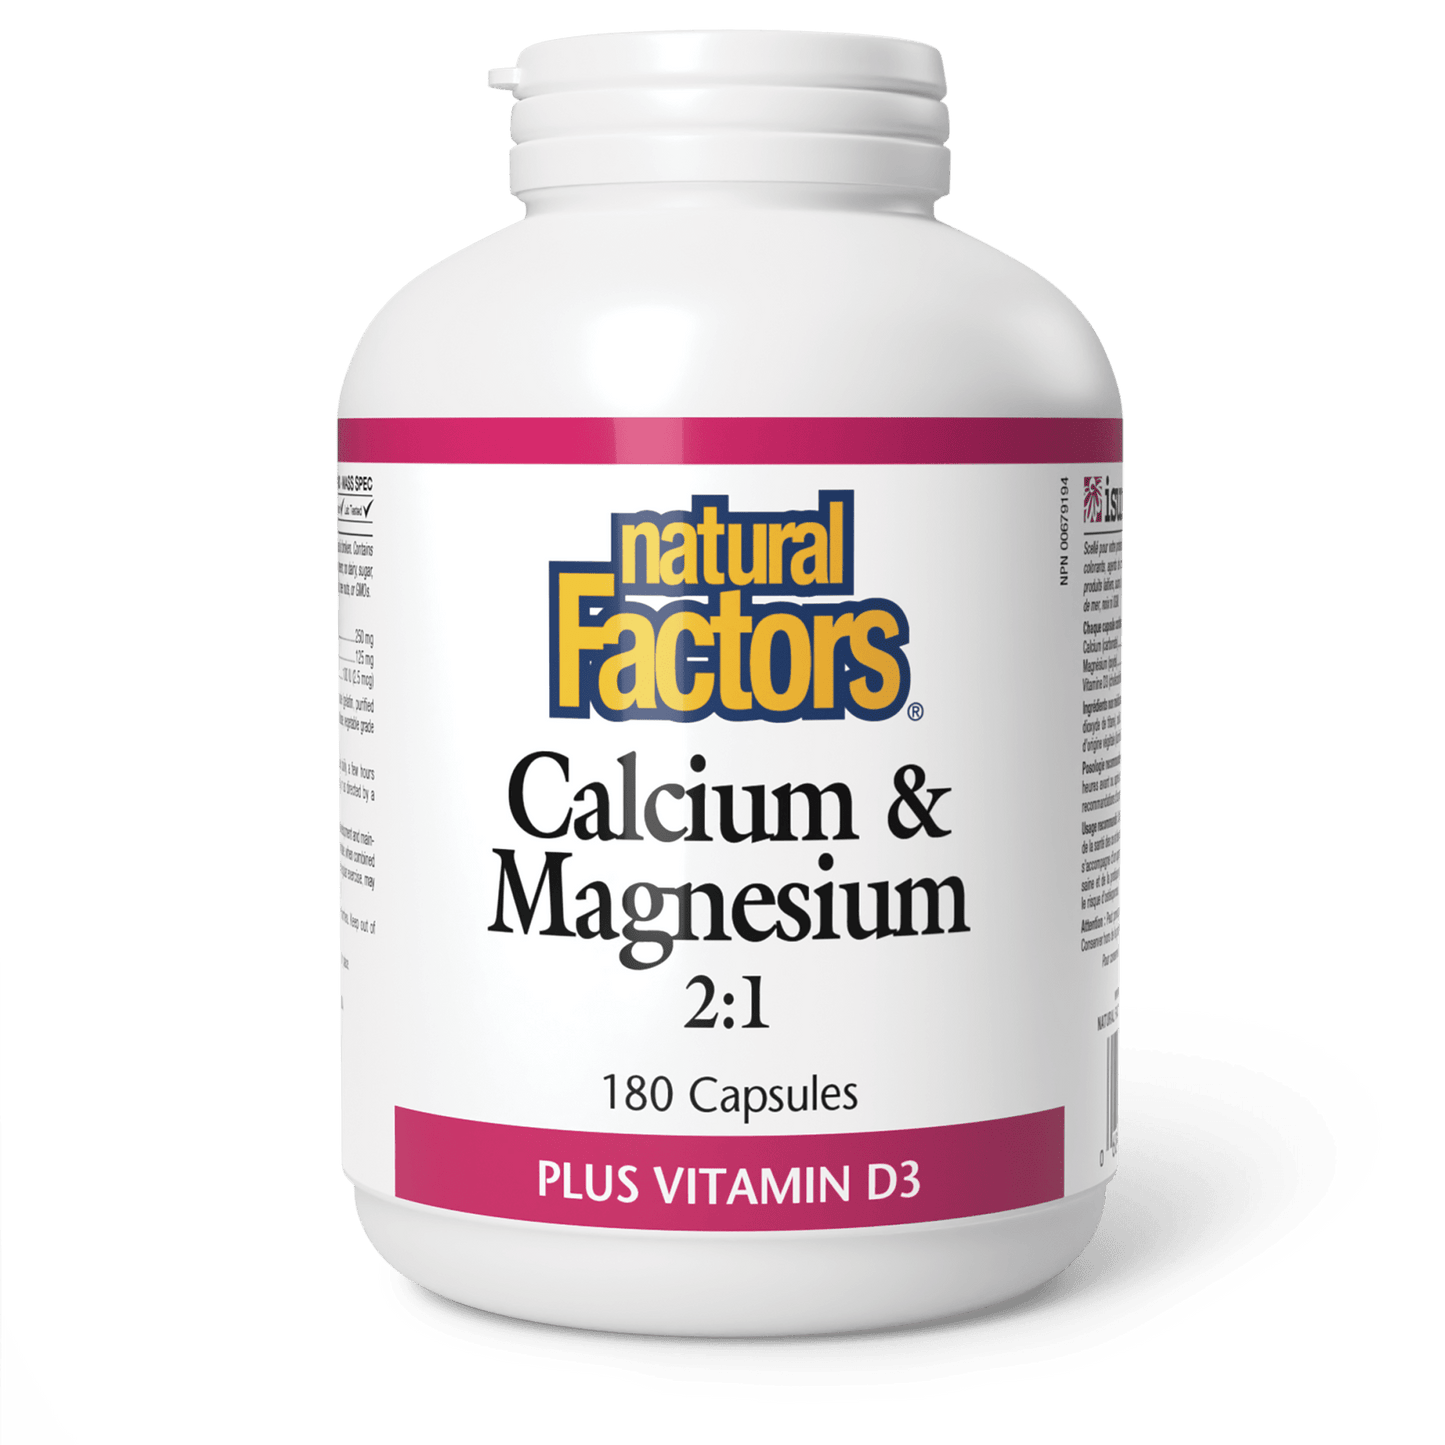 Calcium & Magnesium 2:1 Plus Vitamin D3, Natural Factors|v|image|1626